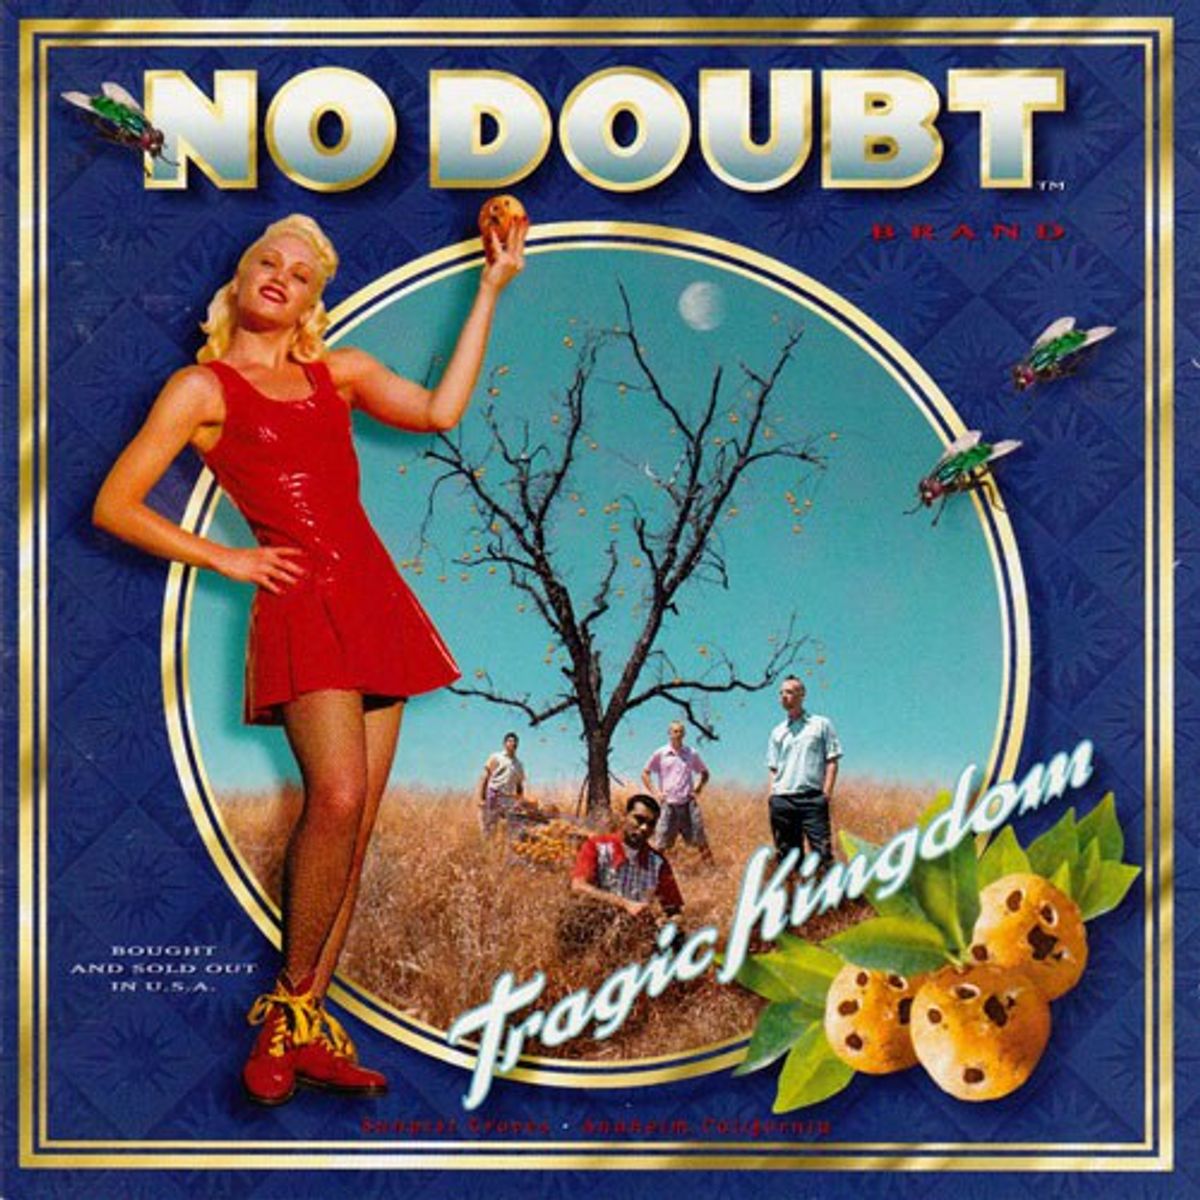 No Doubt's Tragic Kingdom: Track By Track